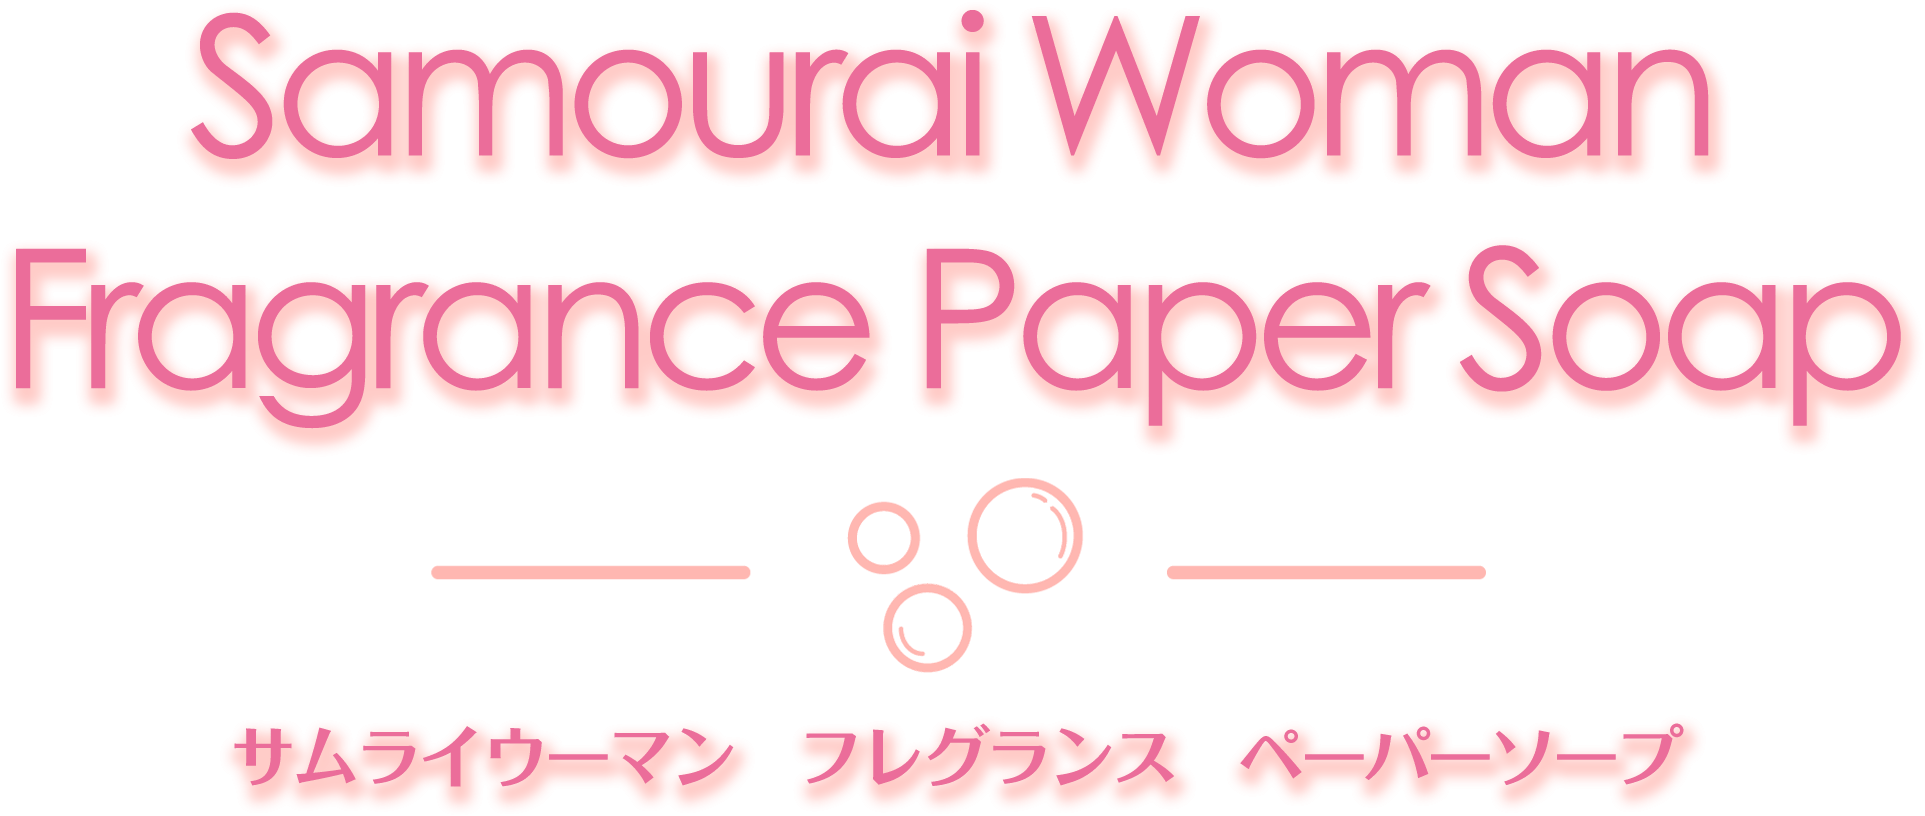 ペーパーソープ | サムライウーマン フレグランス ペーパーソープ | Samourai Woman Fragrance Paper Soap -  サムライウーマン｜ Samourai Woman